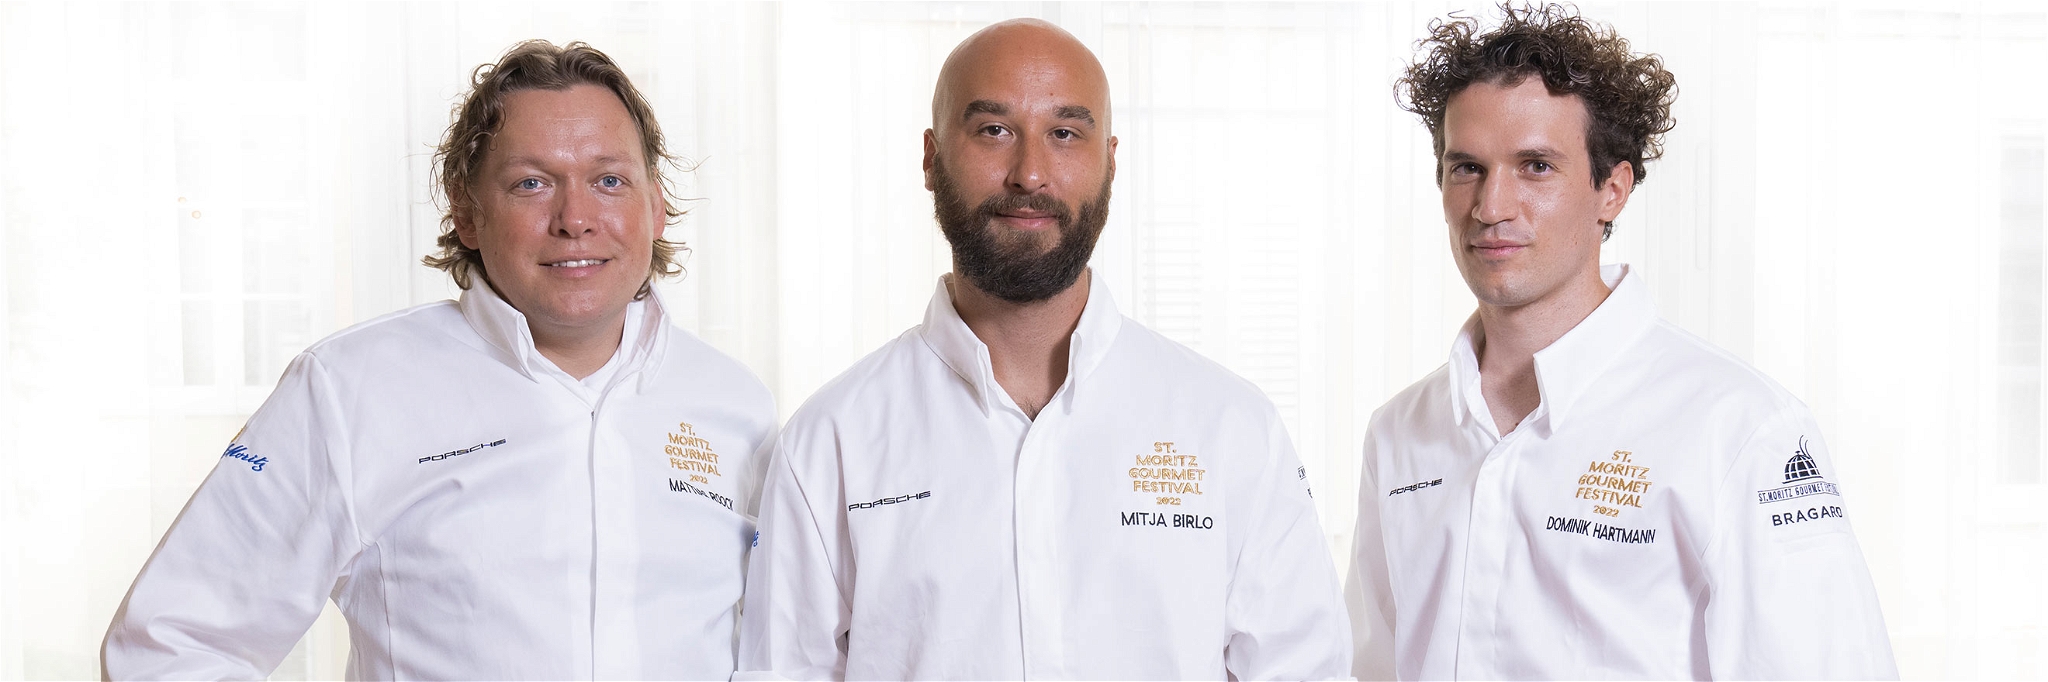 Unter den Star-Chefs des St. Moritz Gourmet Festival 2022: Mattias Roock, Mitja Birlo und Dominik Hartmann&nbsp;